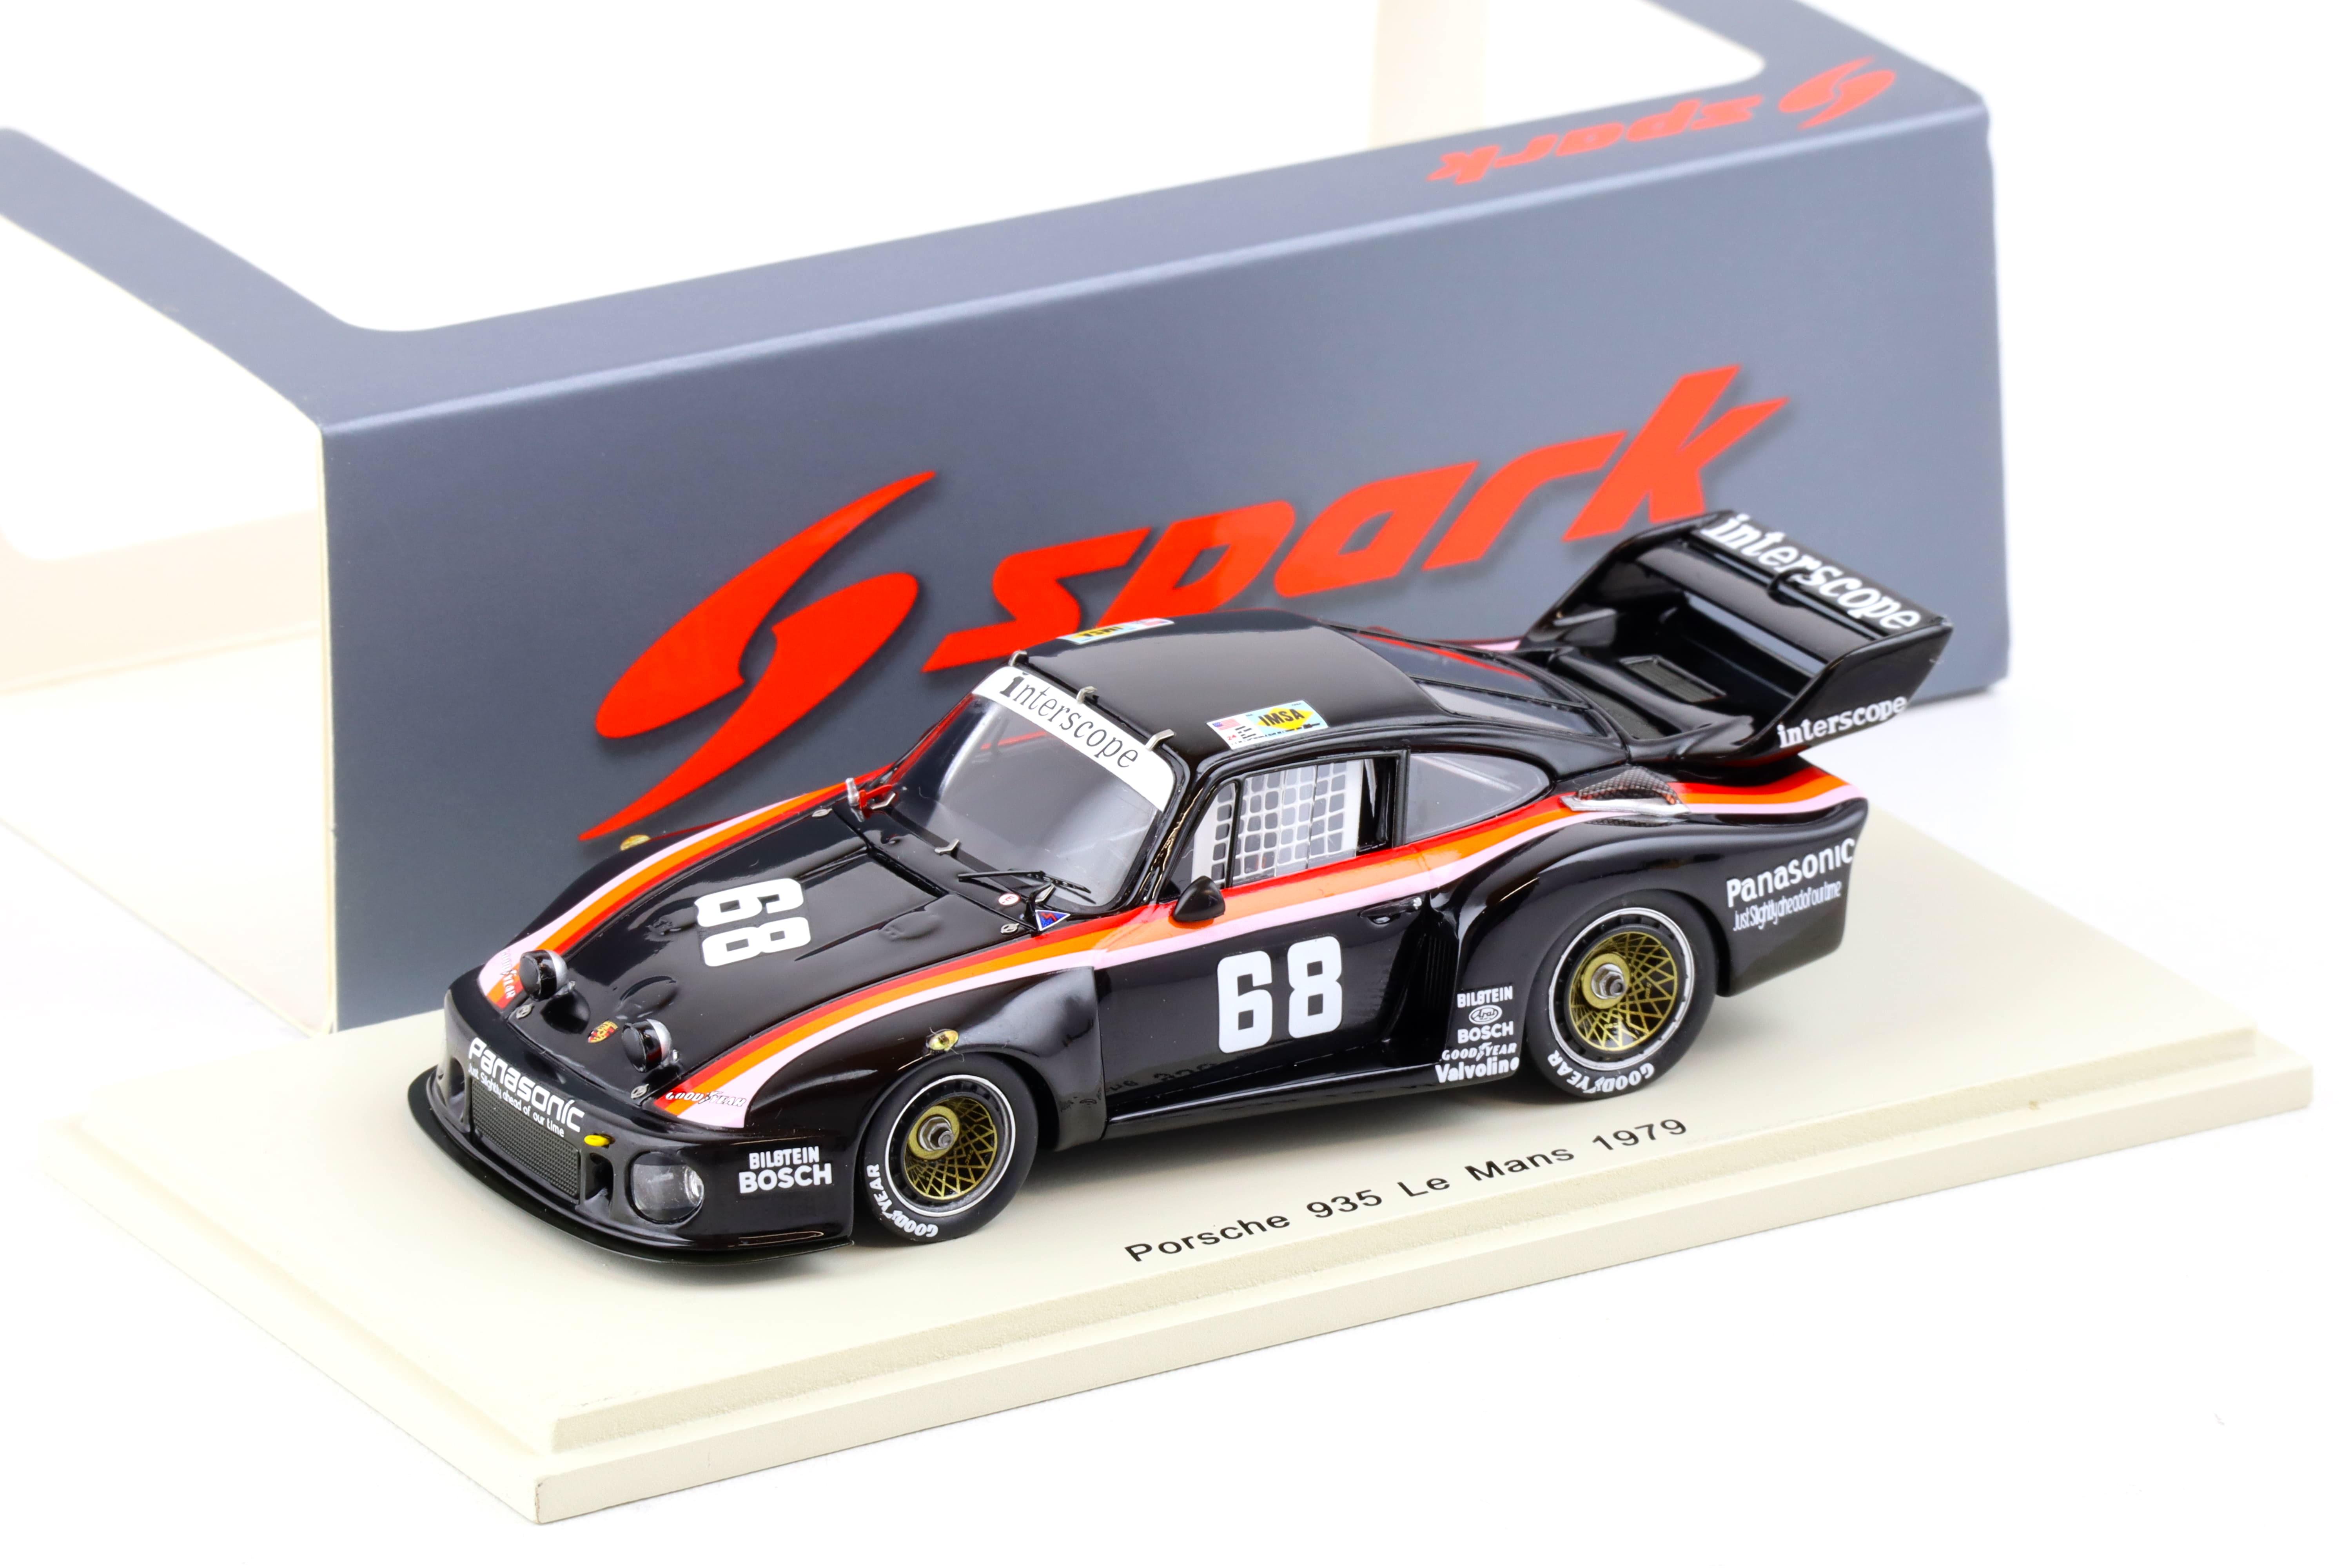 1:43 Spark Porsche 935 Le Mans 1979 INTERSCOPE #68 Minter/ Morton